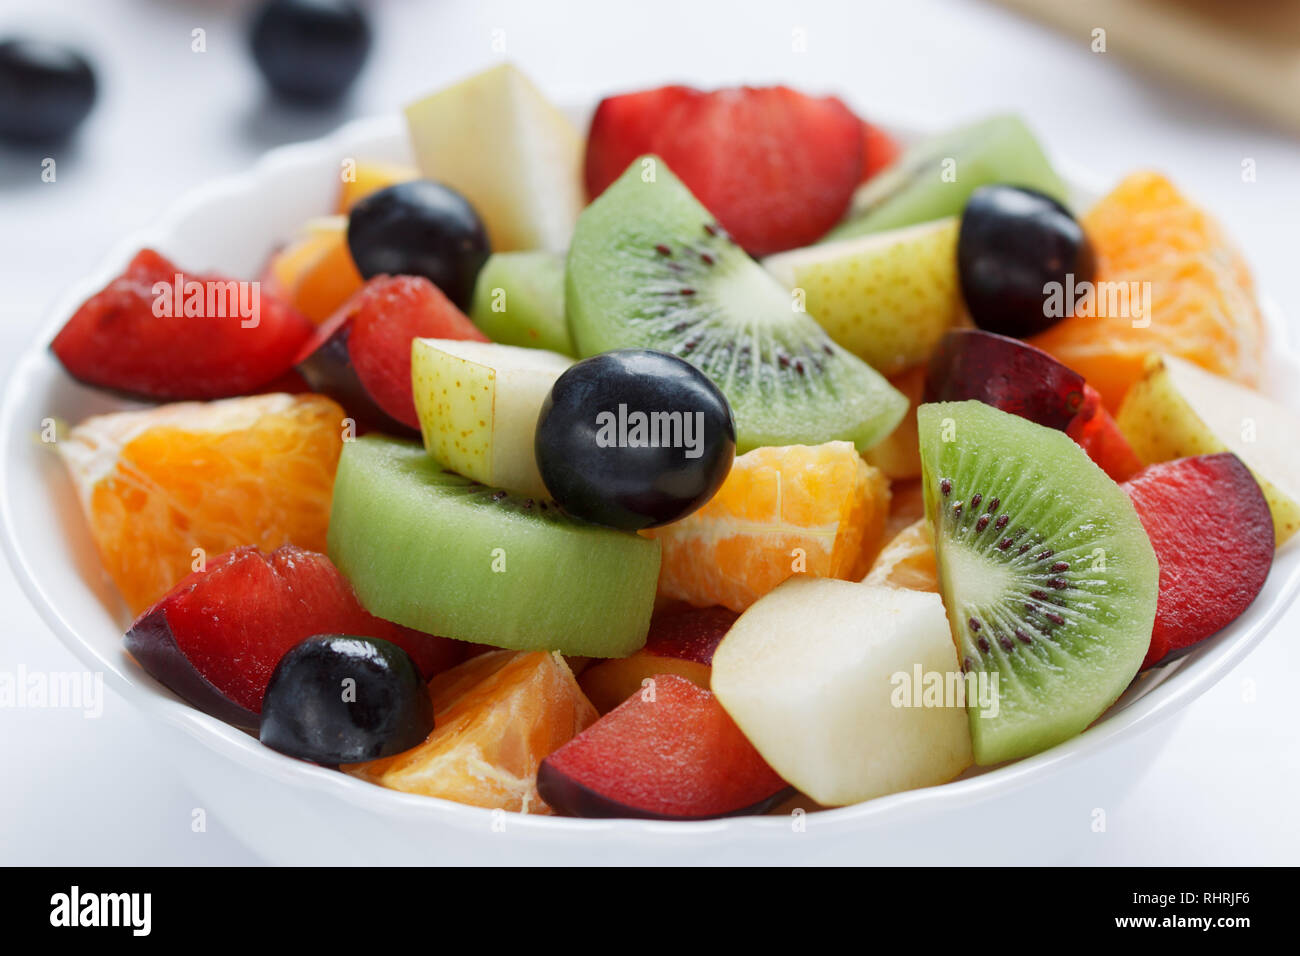 Frischer Salat aus Kiwis, Orangen, Pflaumen und anderen Früchten. Gesunde Lebensweise. Vegetarisches Essen. Stockfoto